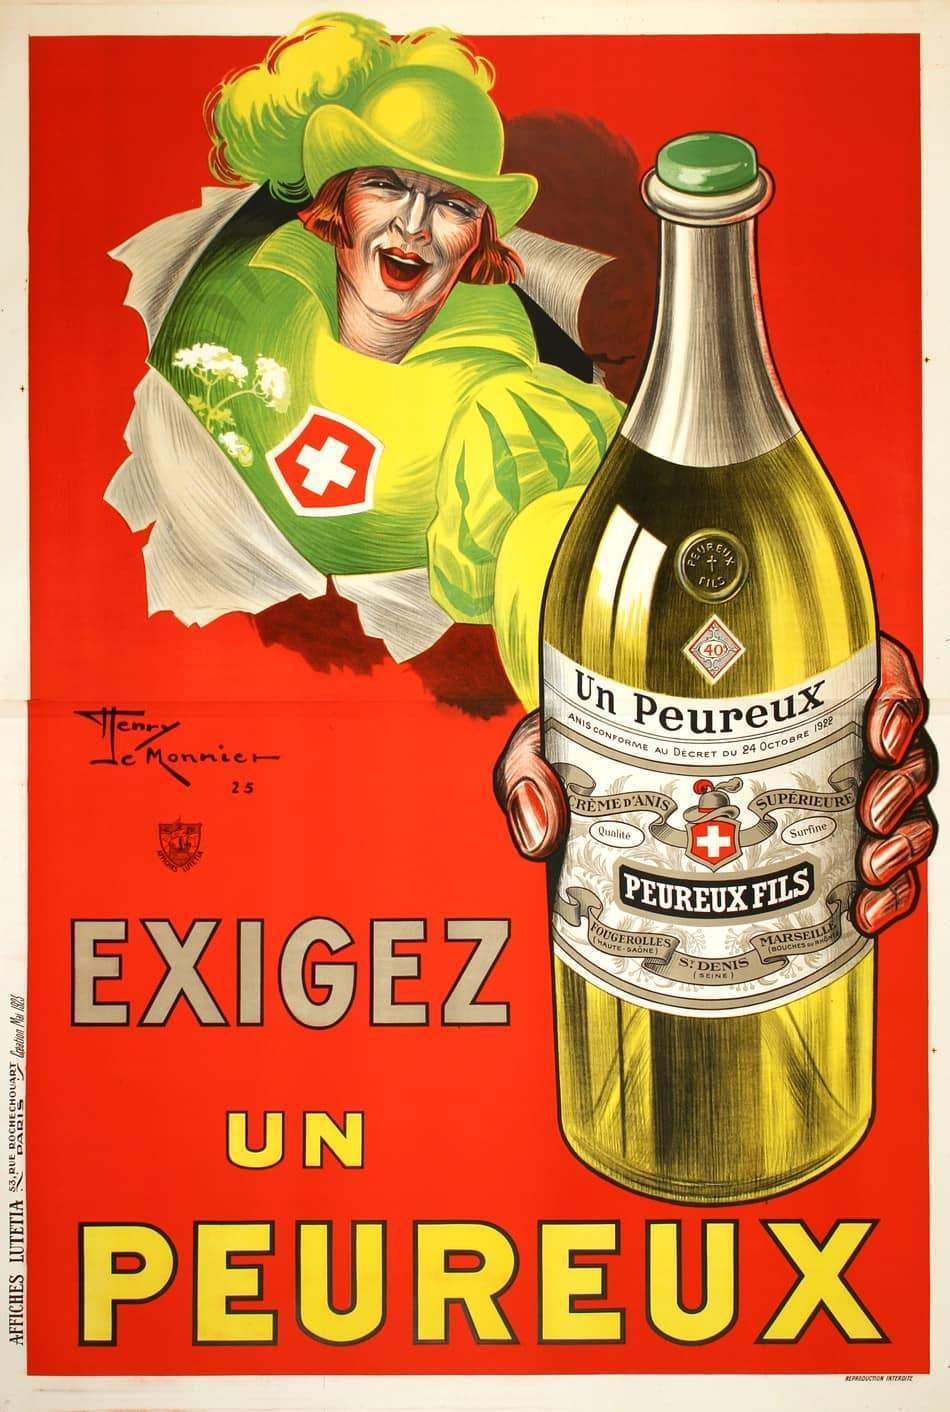 Original Vintage French Exigez Un Peureux Poster by Henri LeMonnier c1925